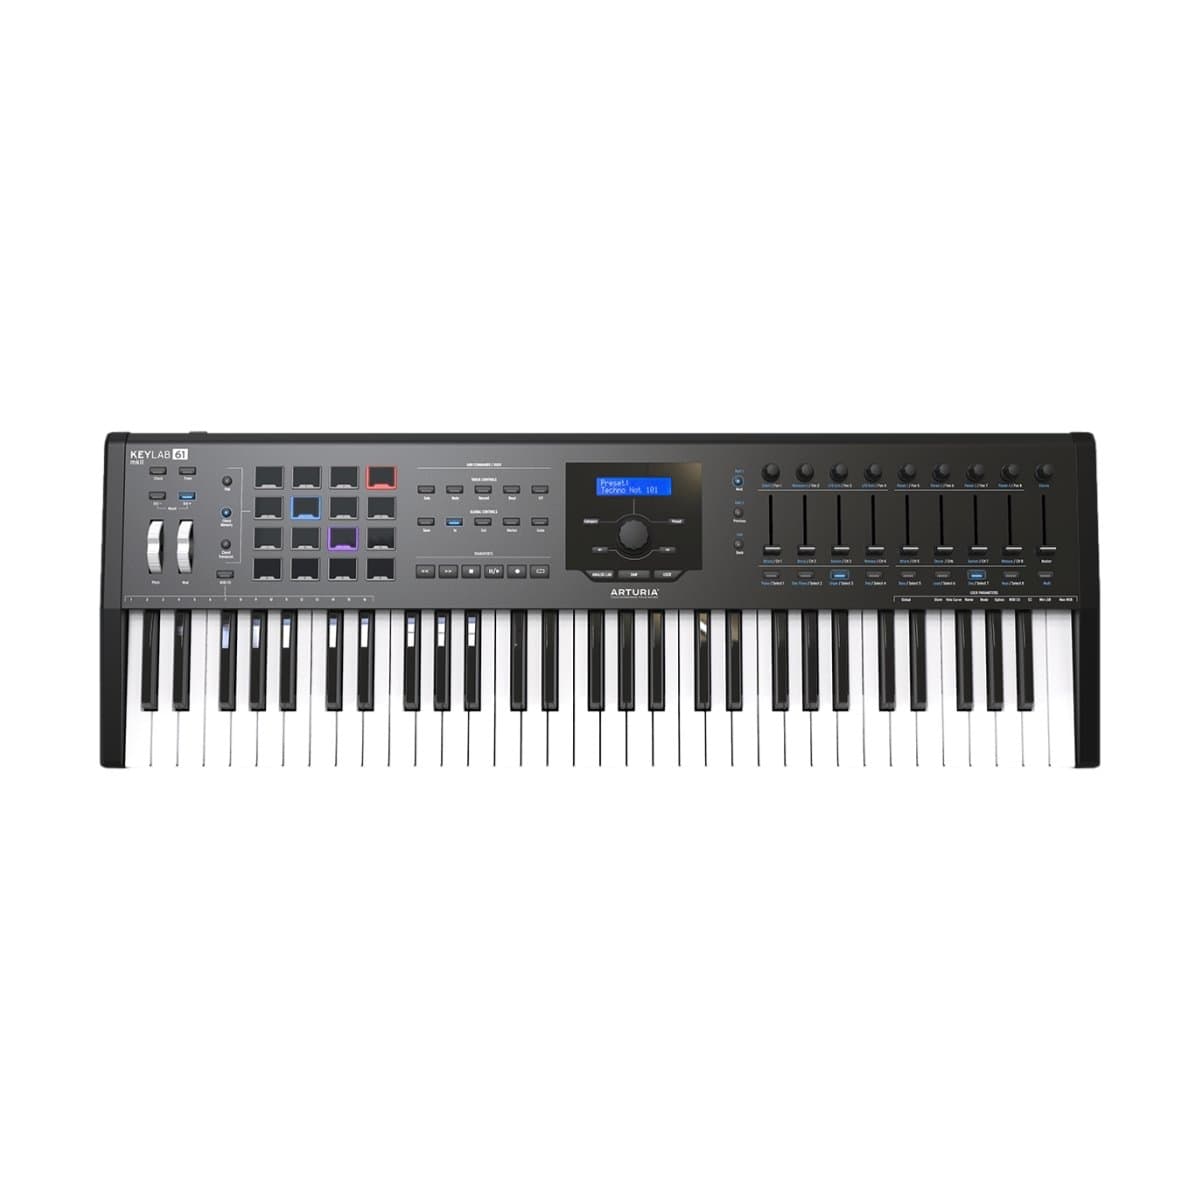 Arturia Keys Arturia Keylab 61 MK2 MIDI Controller Keyboard 61-Key Black - Byron Music